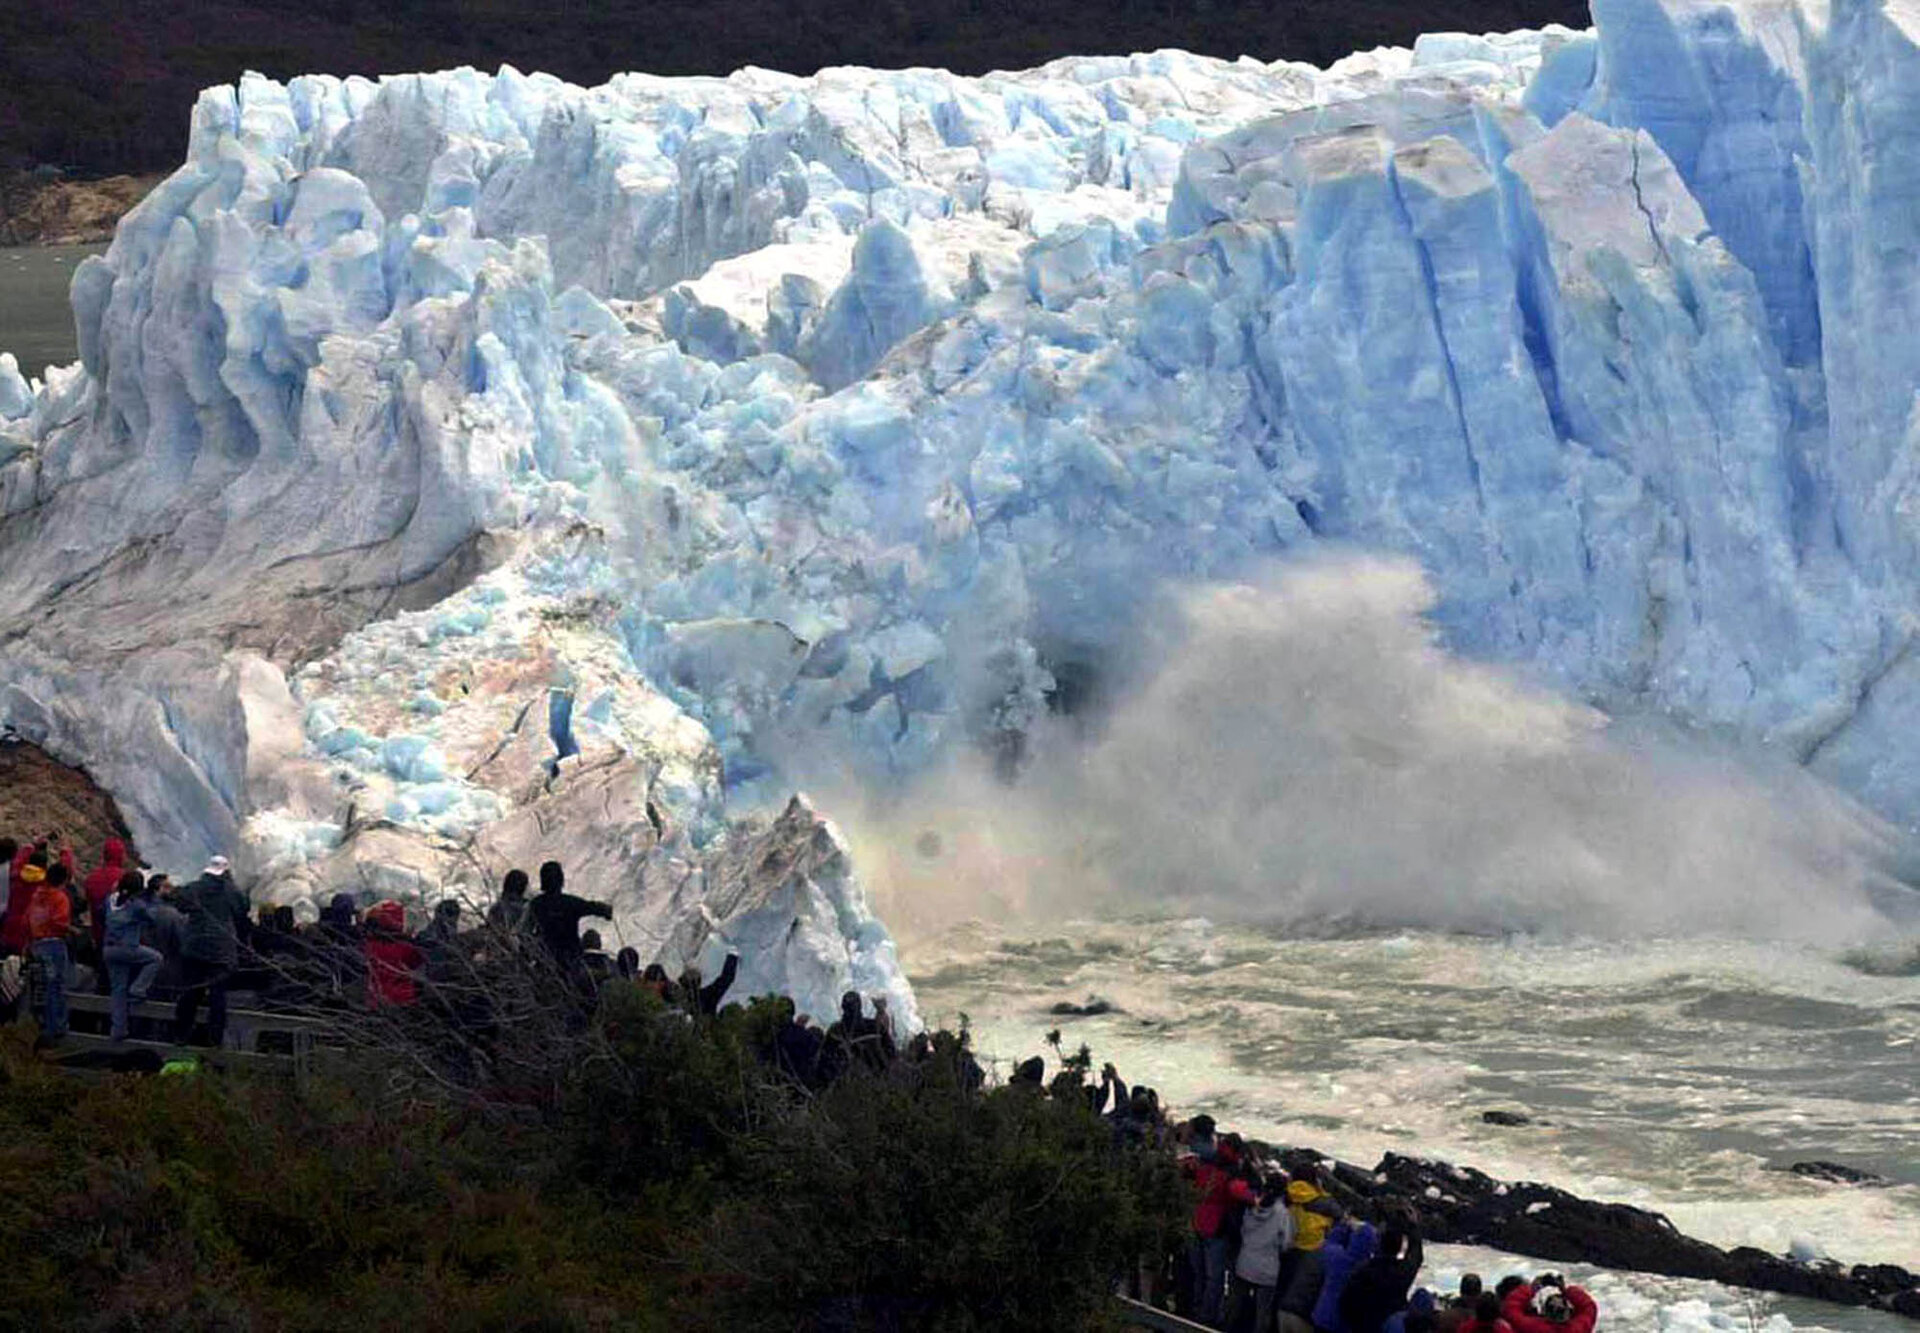 The glacier wall gives way